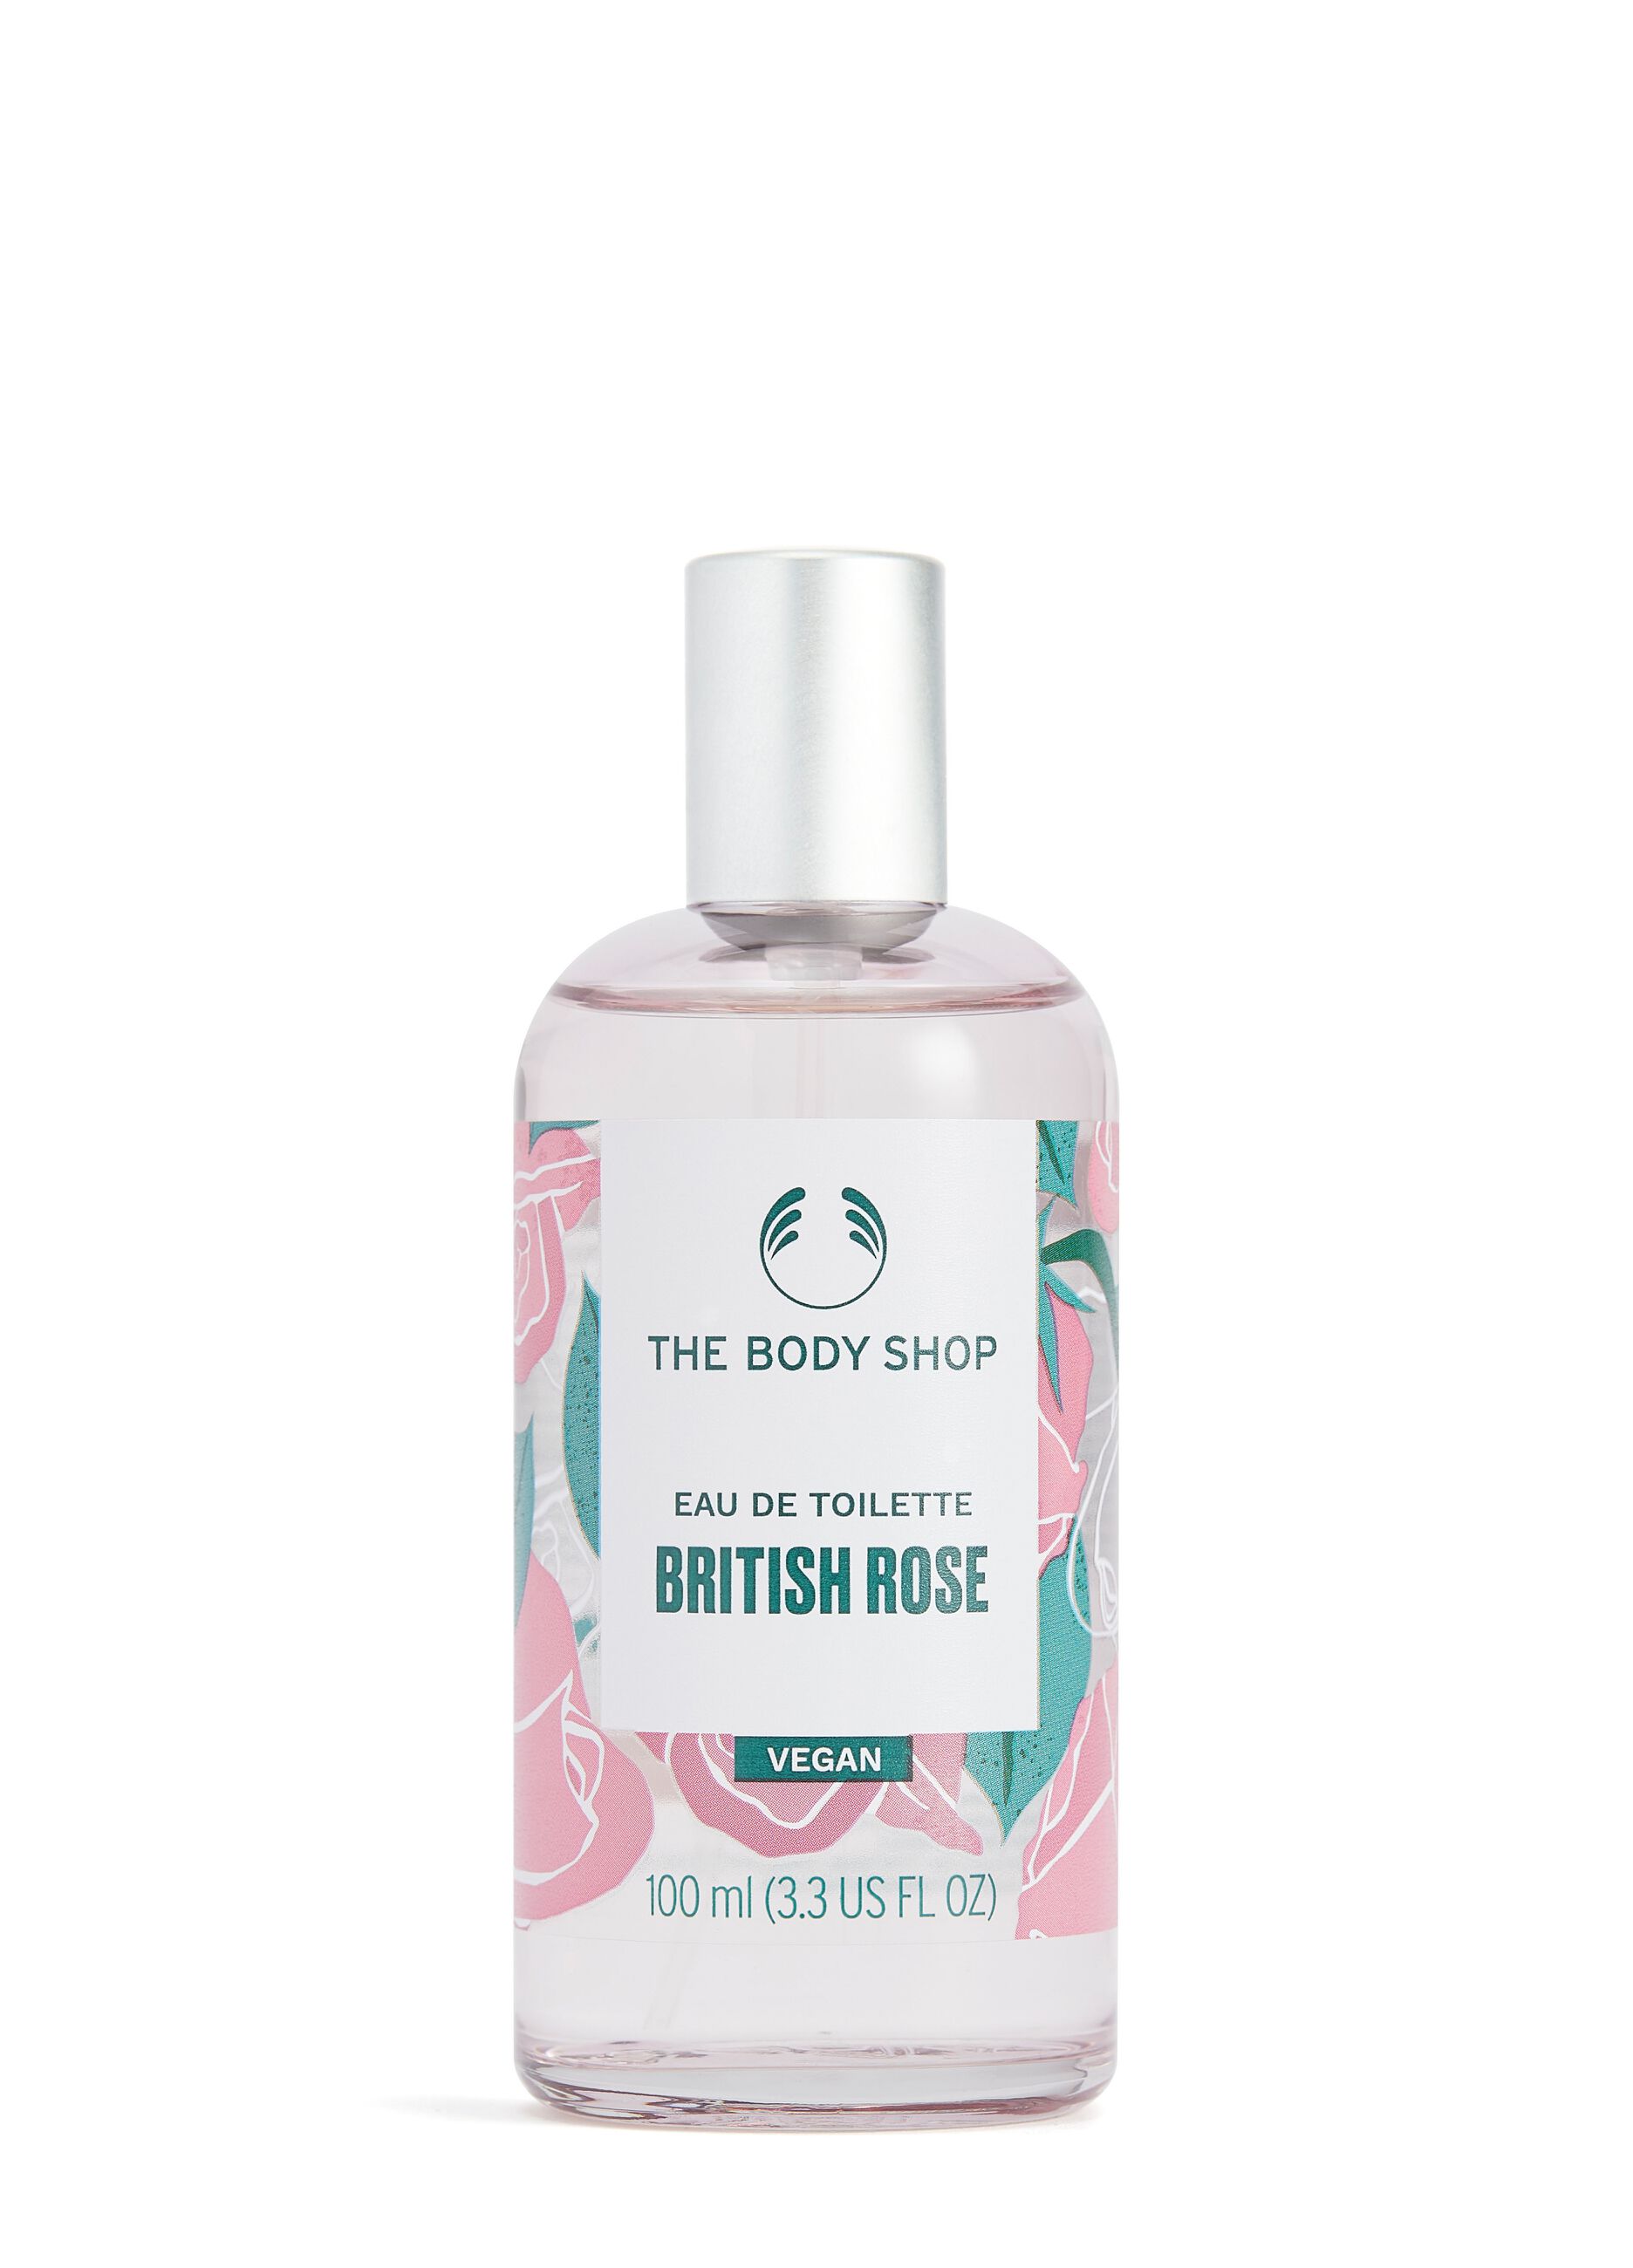 The Body Shop British Rose Eau de Toilette 100ml